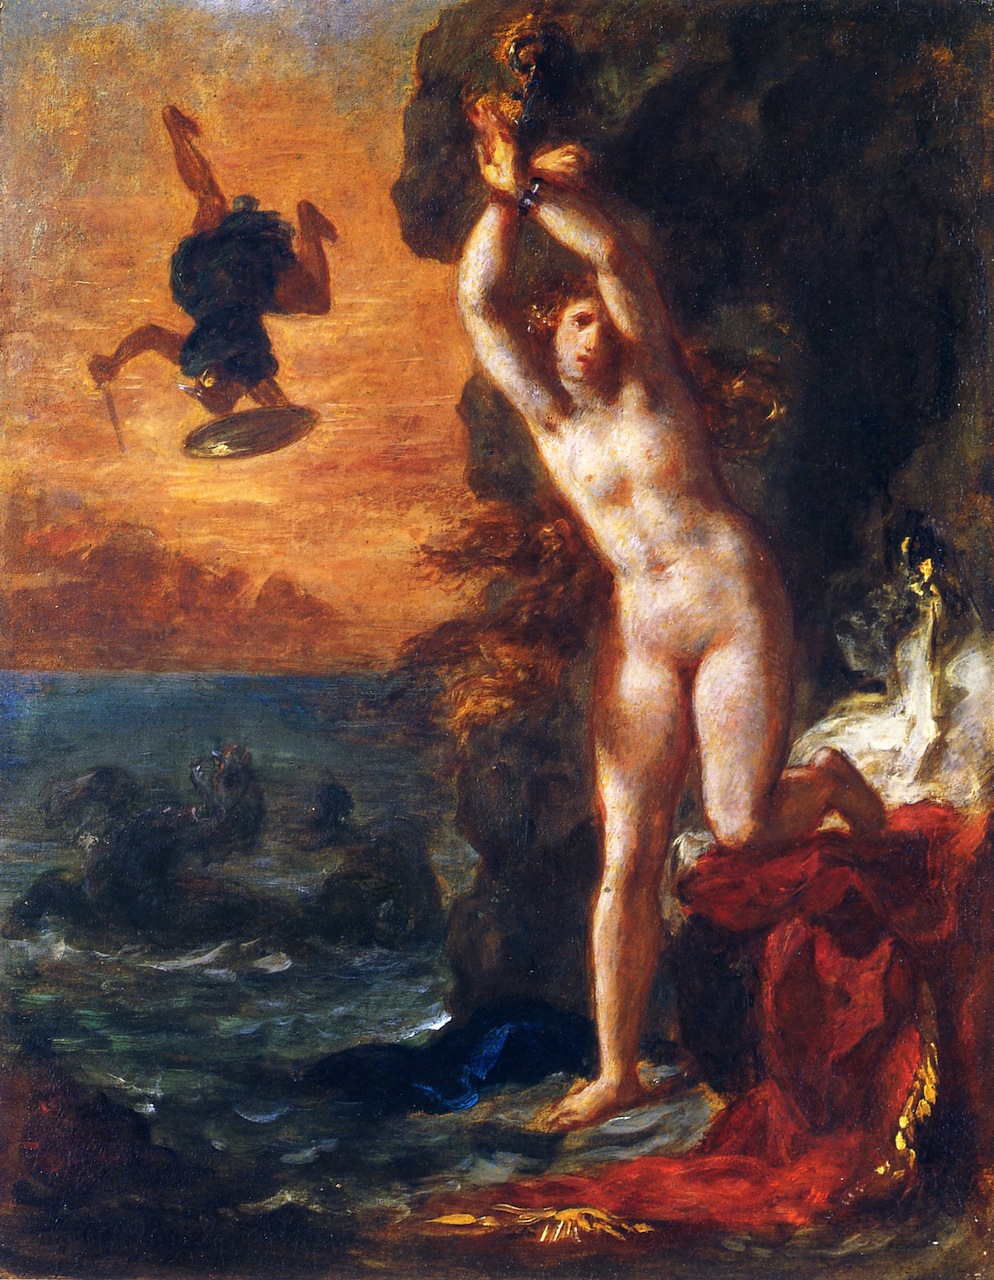 Eugene+Delacroix-1798-1863 (248).jpg